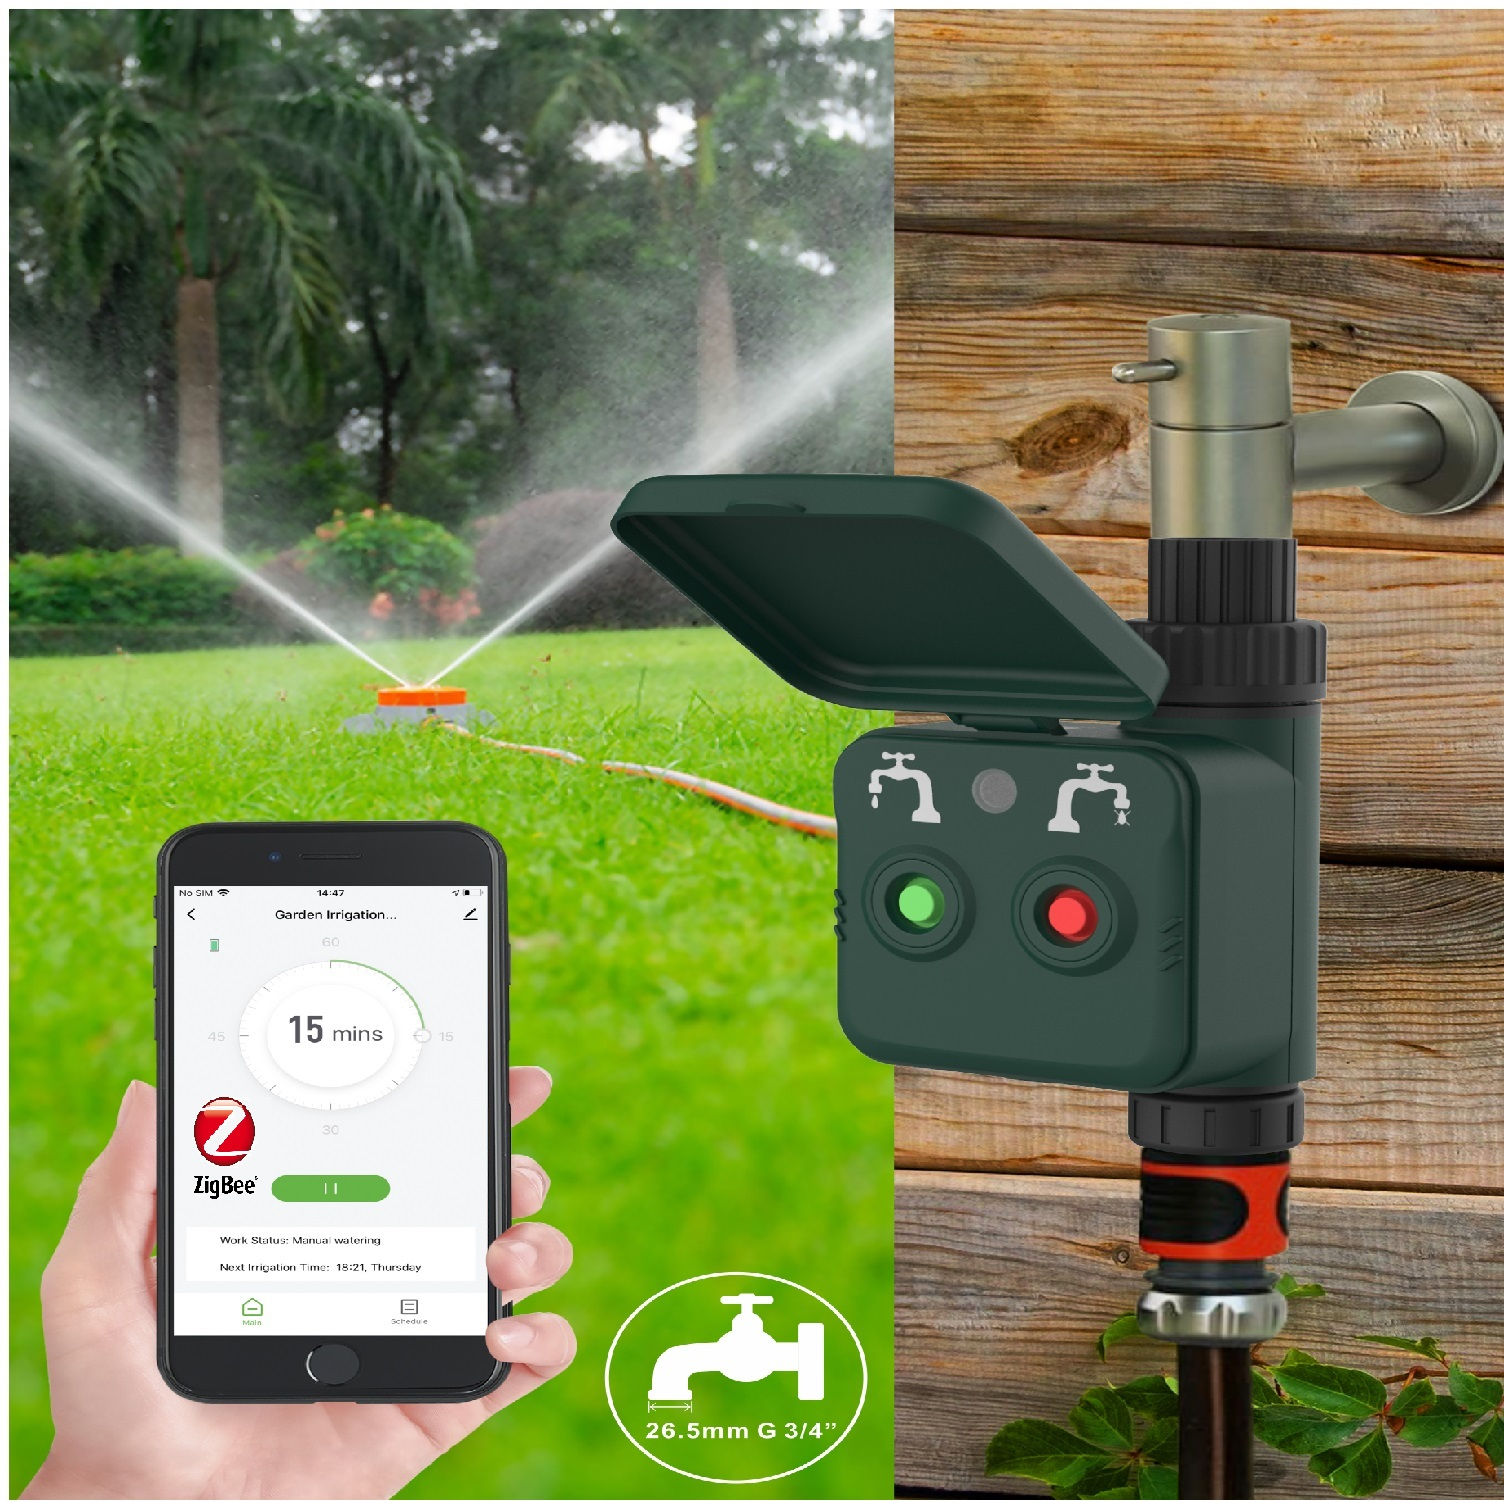 R7060 WOOX der Intelligente Steuerung Intelligente Gartenbewässerung der Gartenbewässerung R7060 NC Steuerung